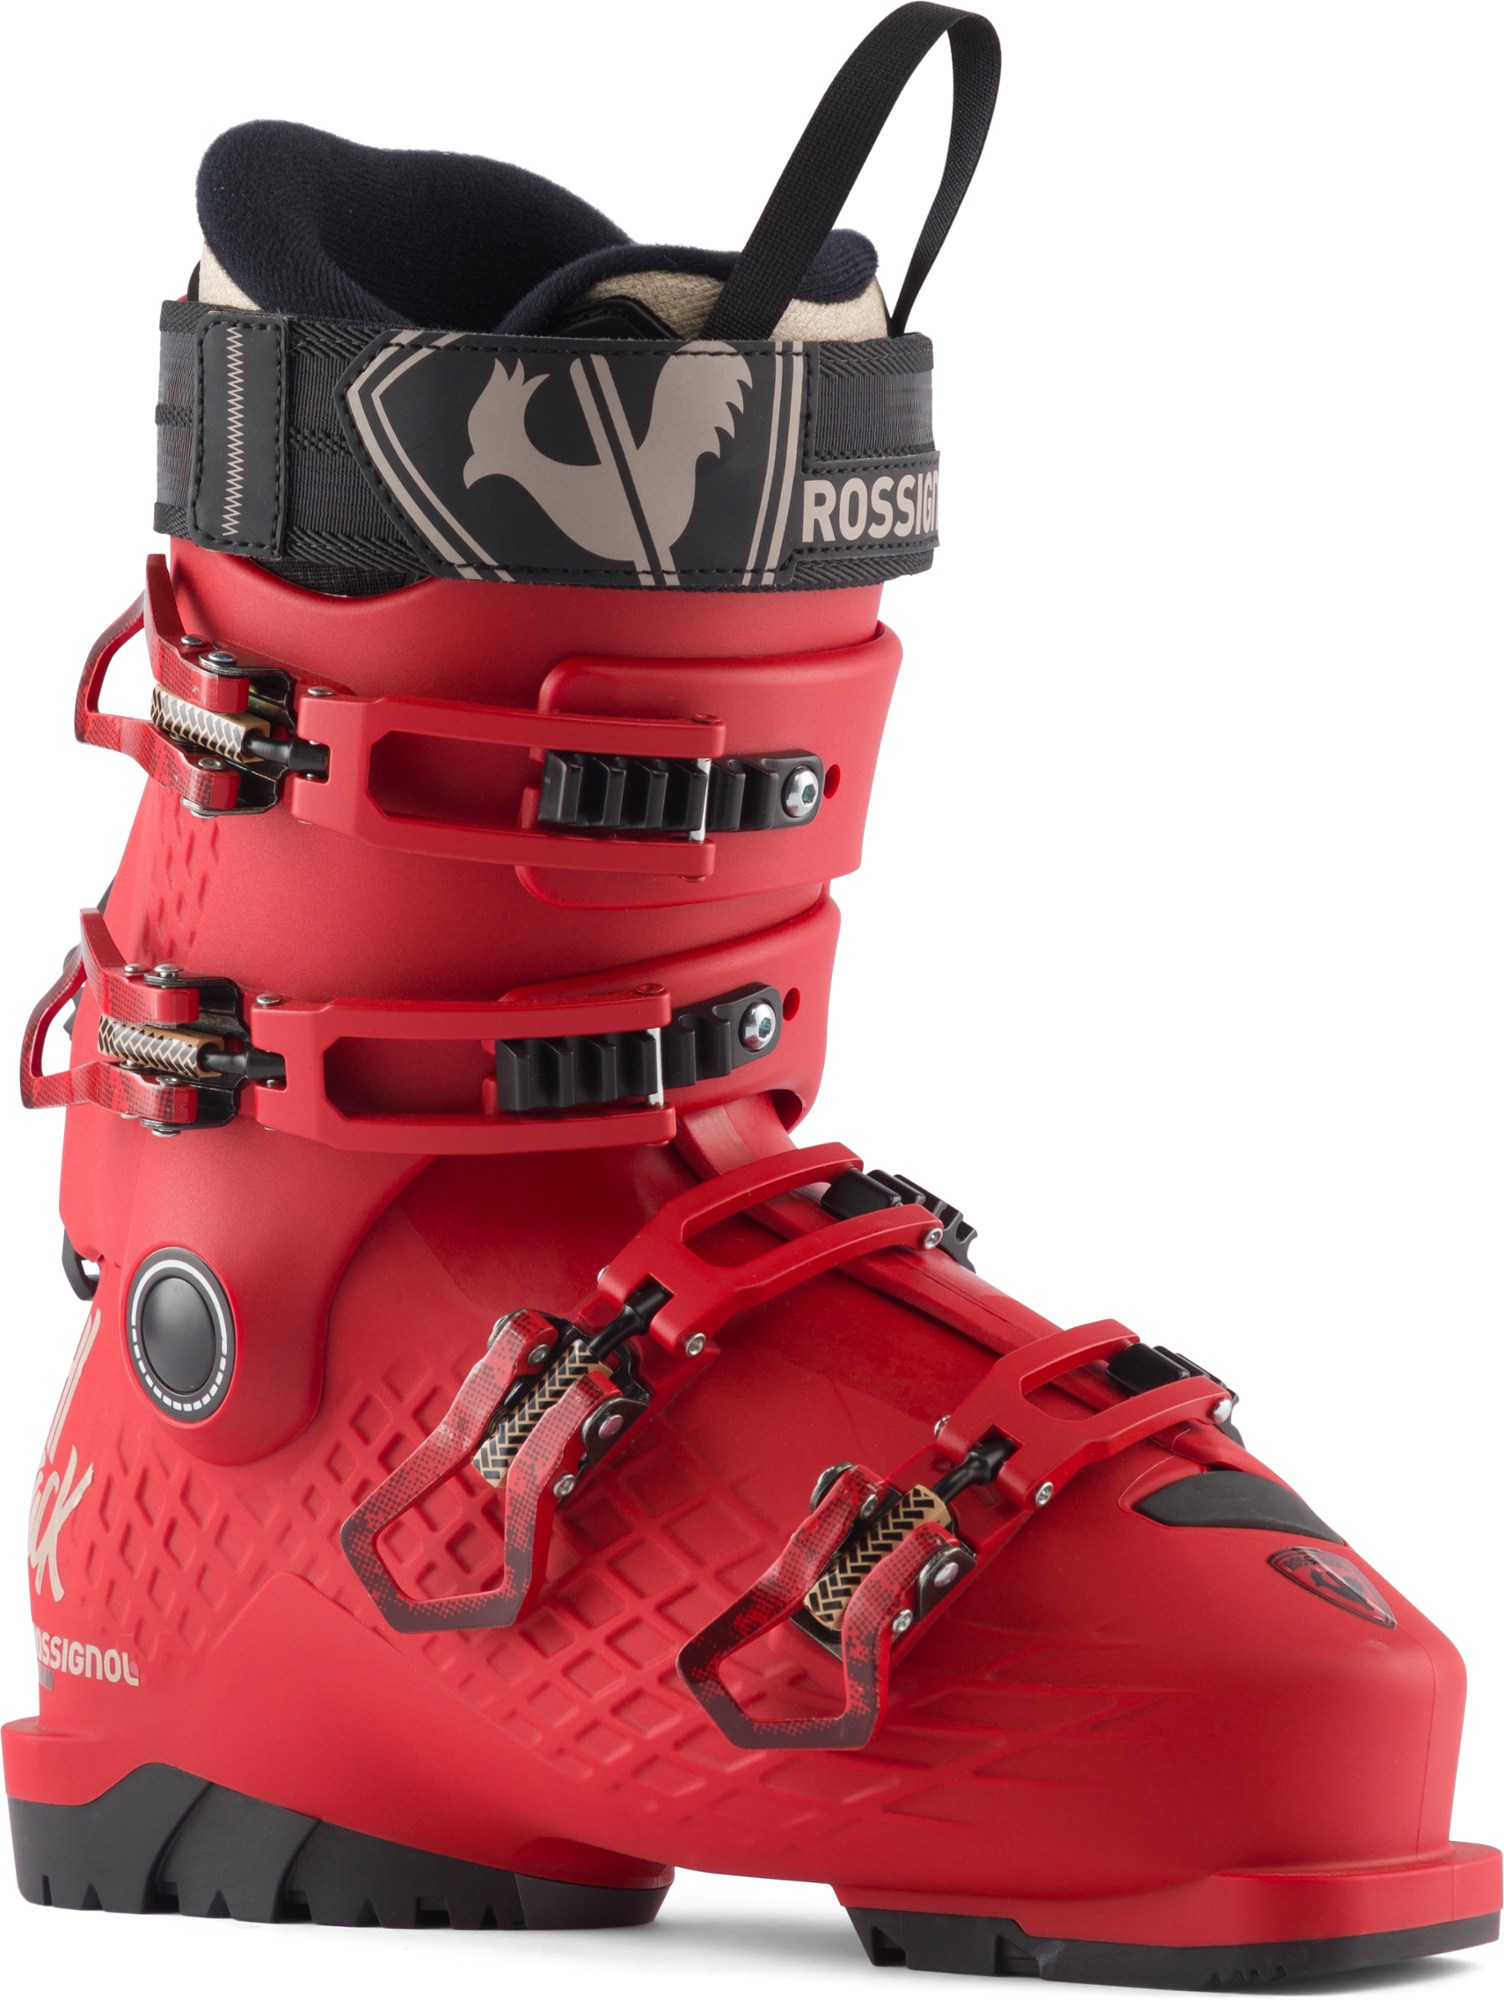 Лыжные ботинки Alltrack Jr 80 - Детские - 2023/2024 г. Rossignol, красный